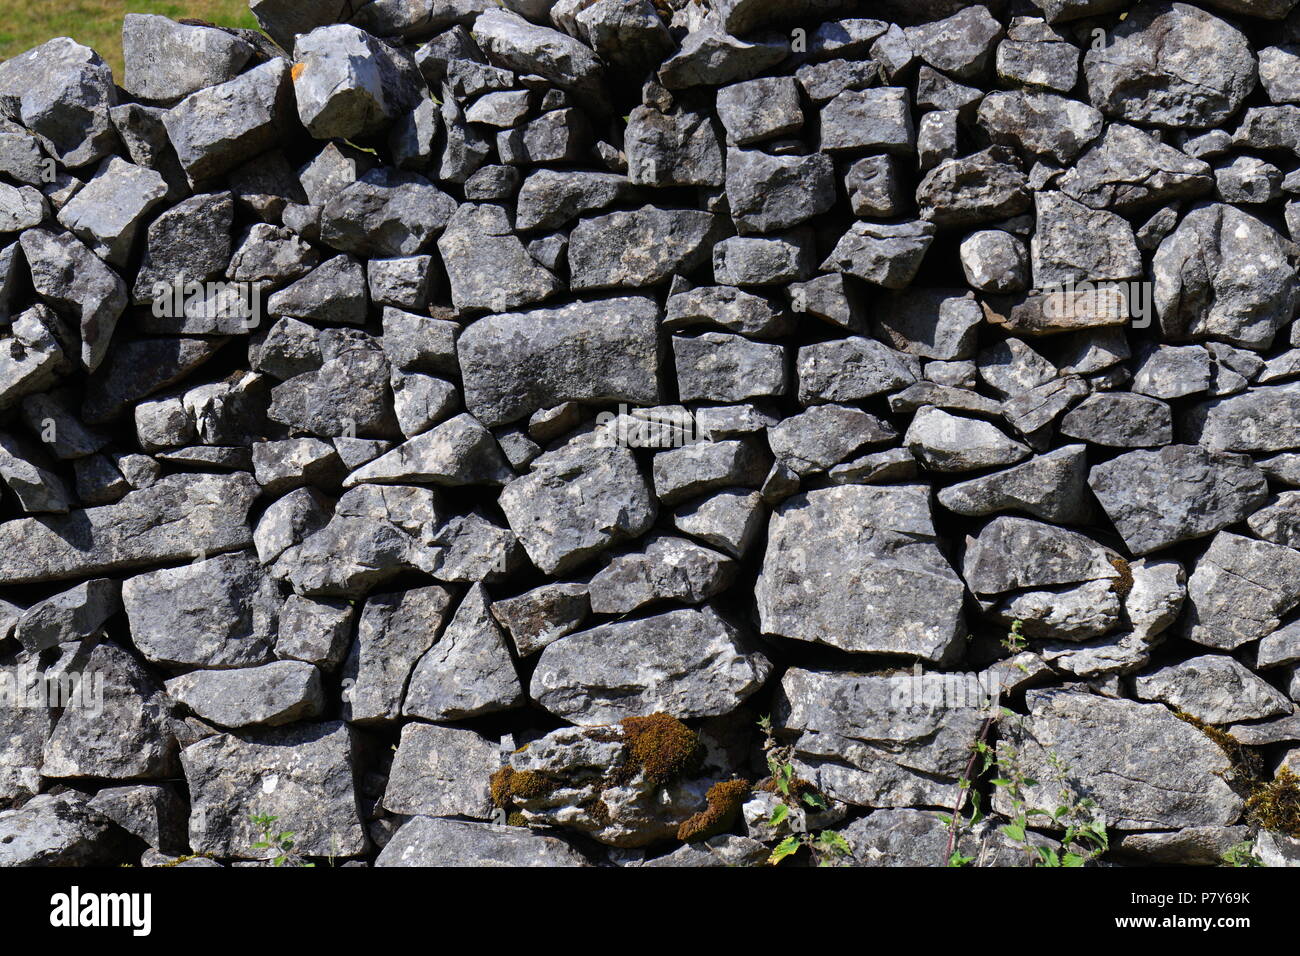 Uno de los numerosos muros de piedra seca a lo largo del camino a la cumbre Ingleborough y uno de los recorridos de los Yorkshire Tres Picos desafío. Foto de stock